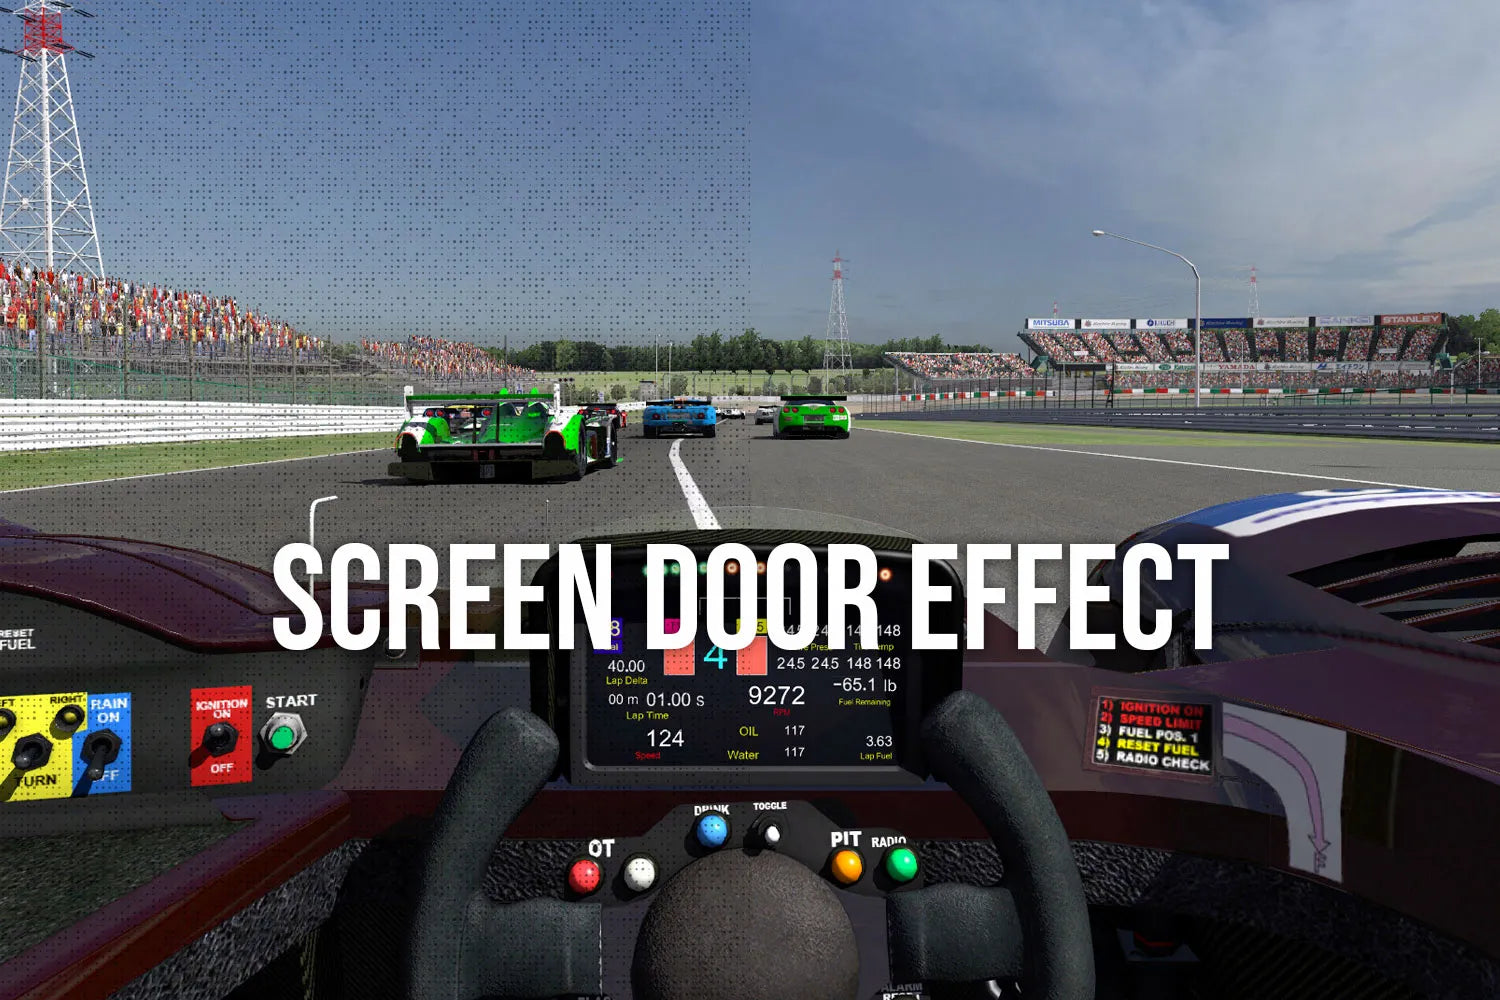 What is the screen door effect in VR?